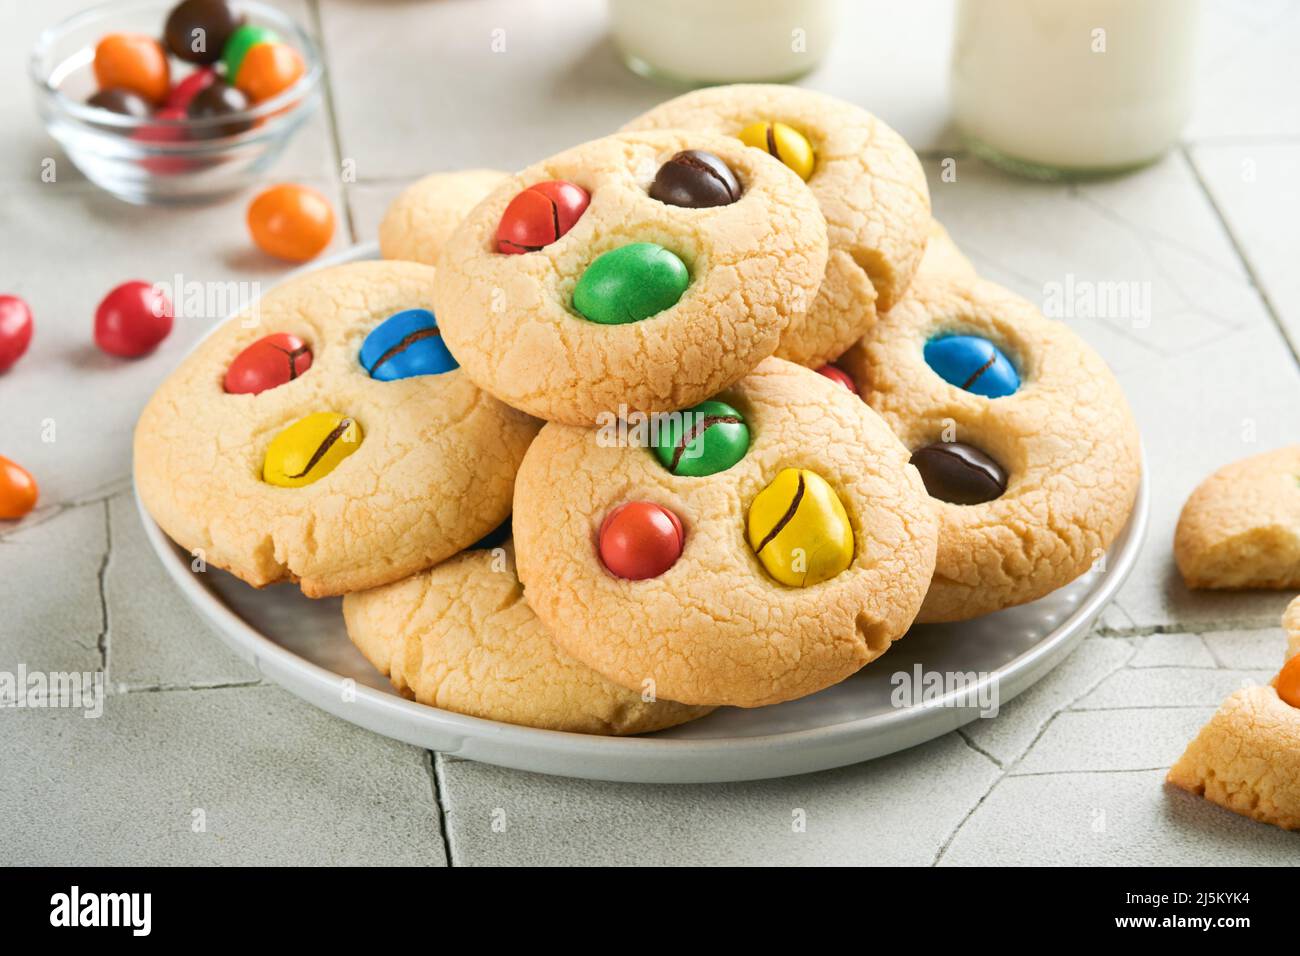 Biscotti fatti in casa con caramelle colorate al cioccolato e latte. Accatastate biscotti frollini con caramelle multicolore sul piatto con una bottiglia di latte accesa Foto Stock